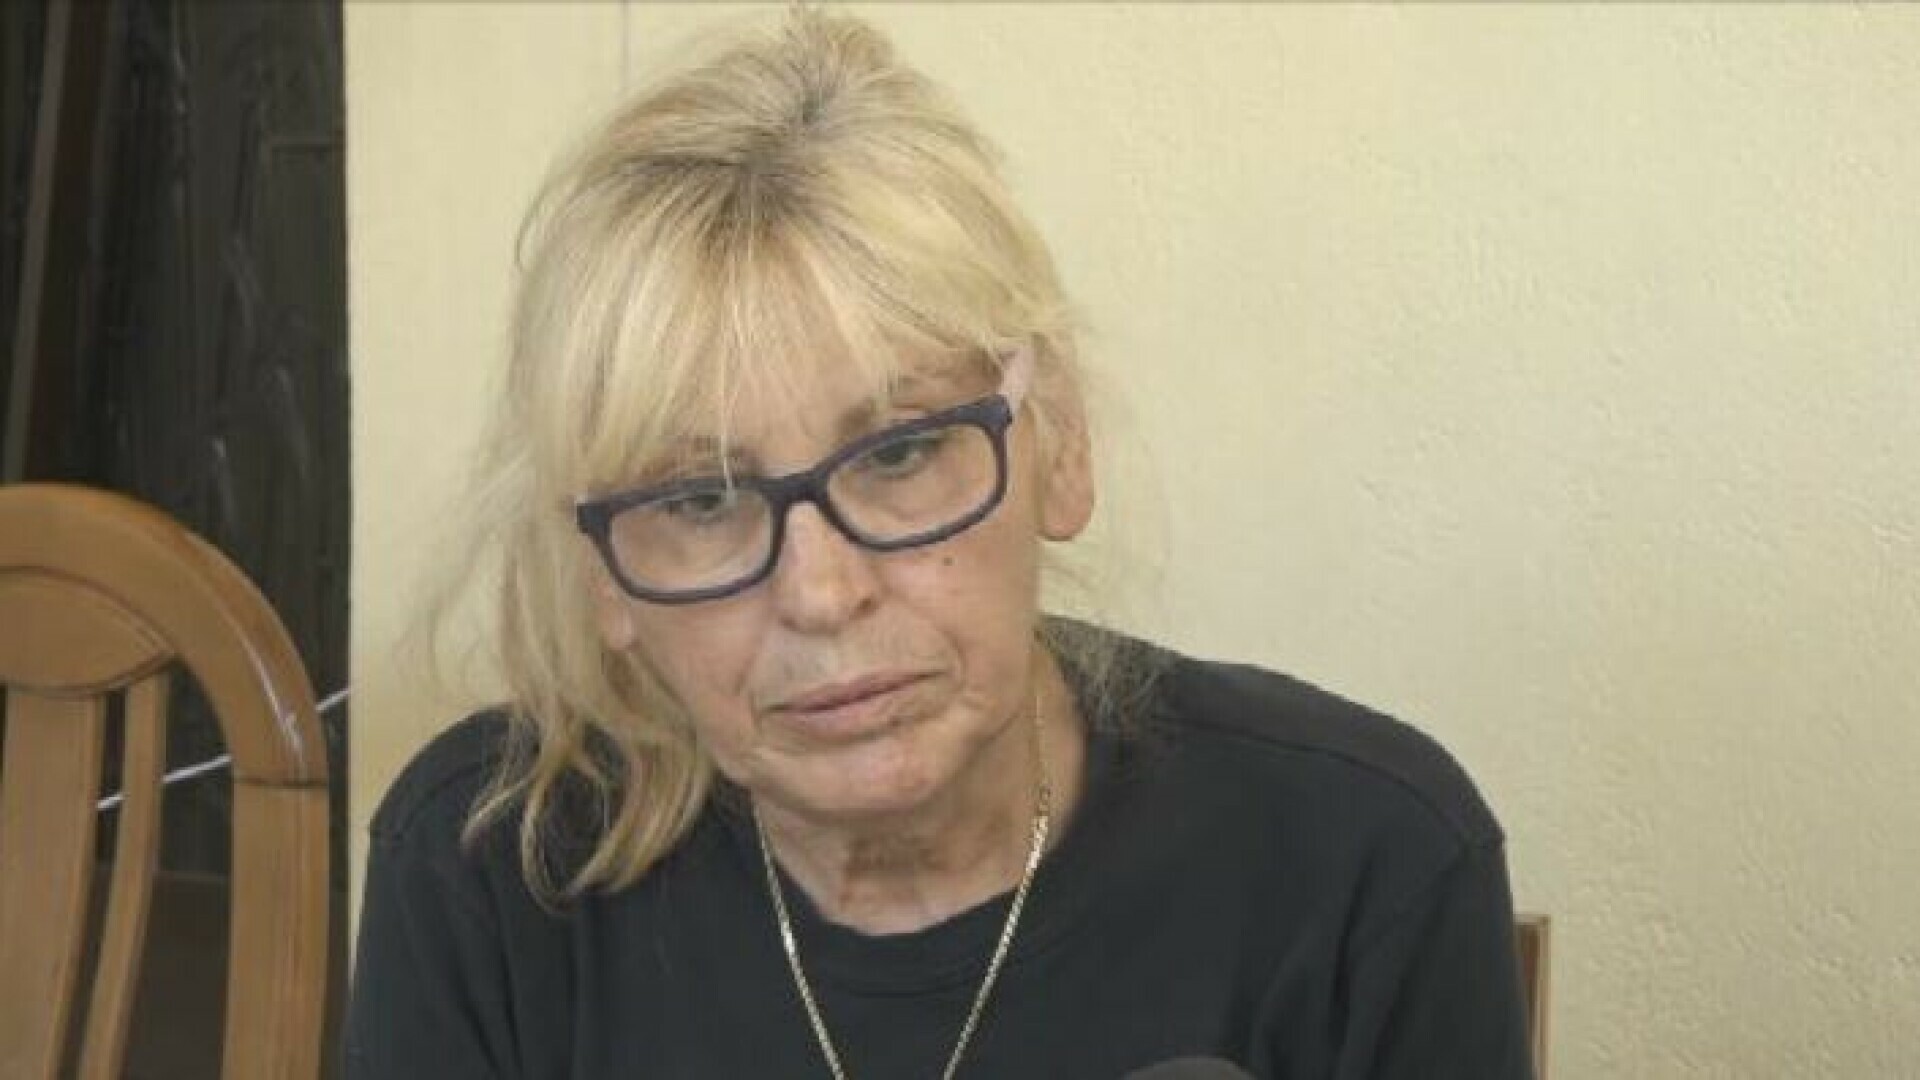 Pogledajte cijeli intervju majke preminulog navijača AEK-a: “Neka razmisli što je učinio mom sinu. Platit će cijenu za svoja djela”